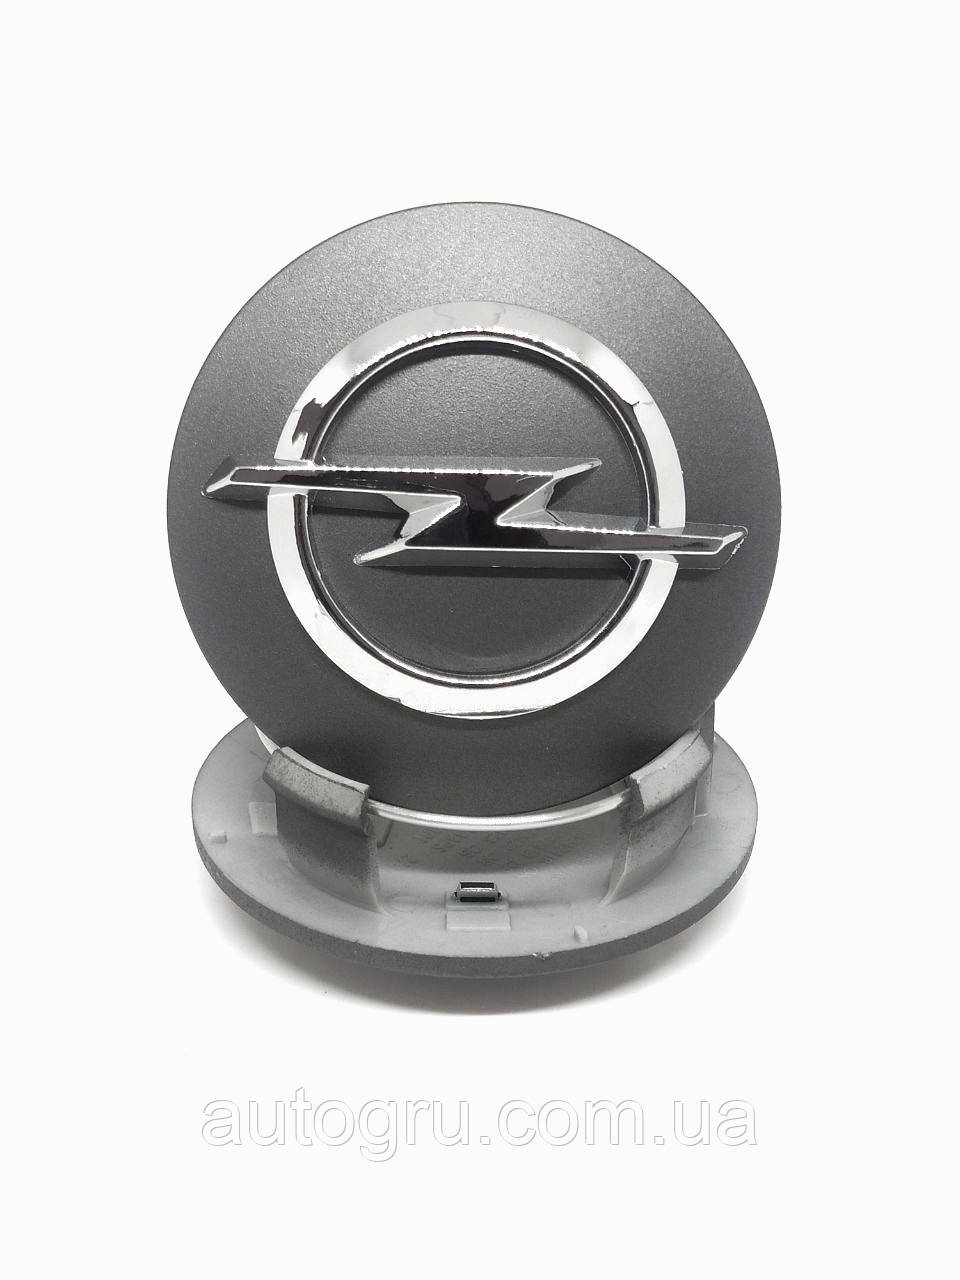 Ковпачок Opel 13242418 заглушка на литі диски Опель